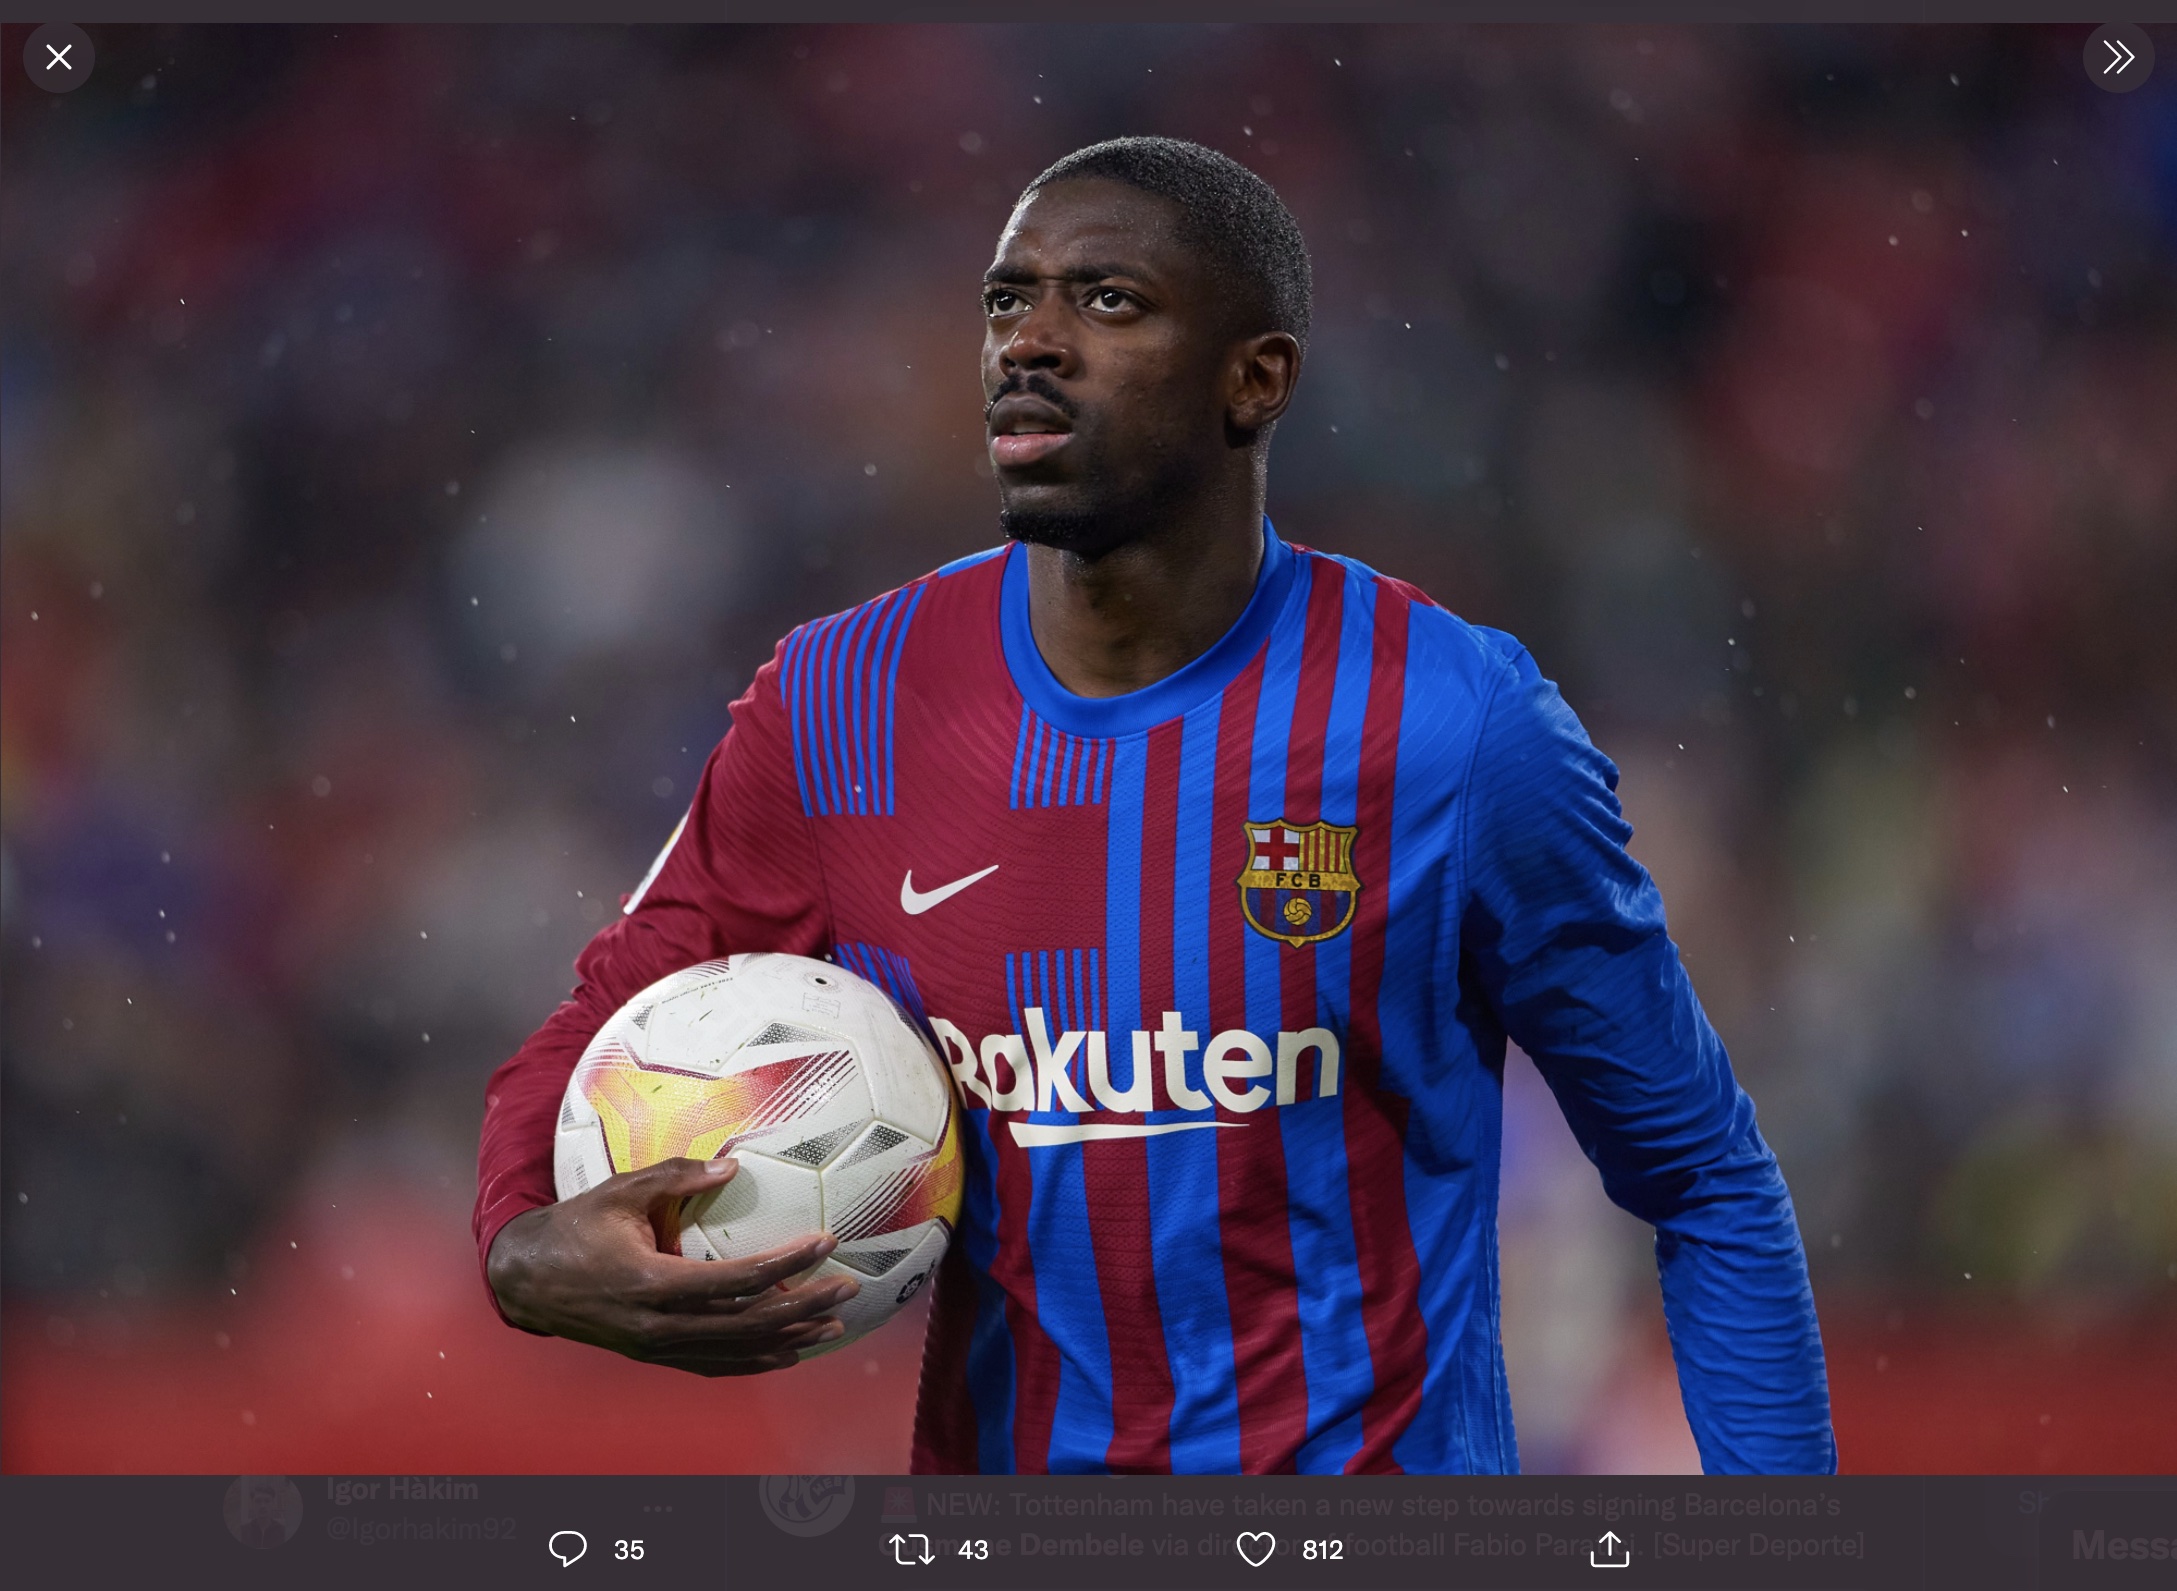 Kabar Buruk untuk Chelsea, Ousmane Dembele Tidak Ingin Tinggalkan Barcelona